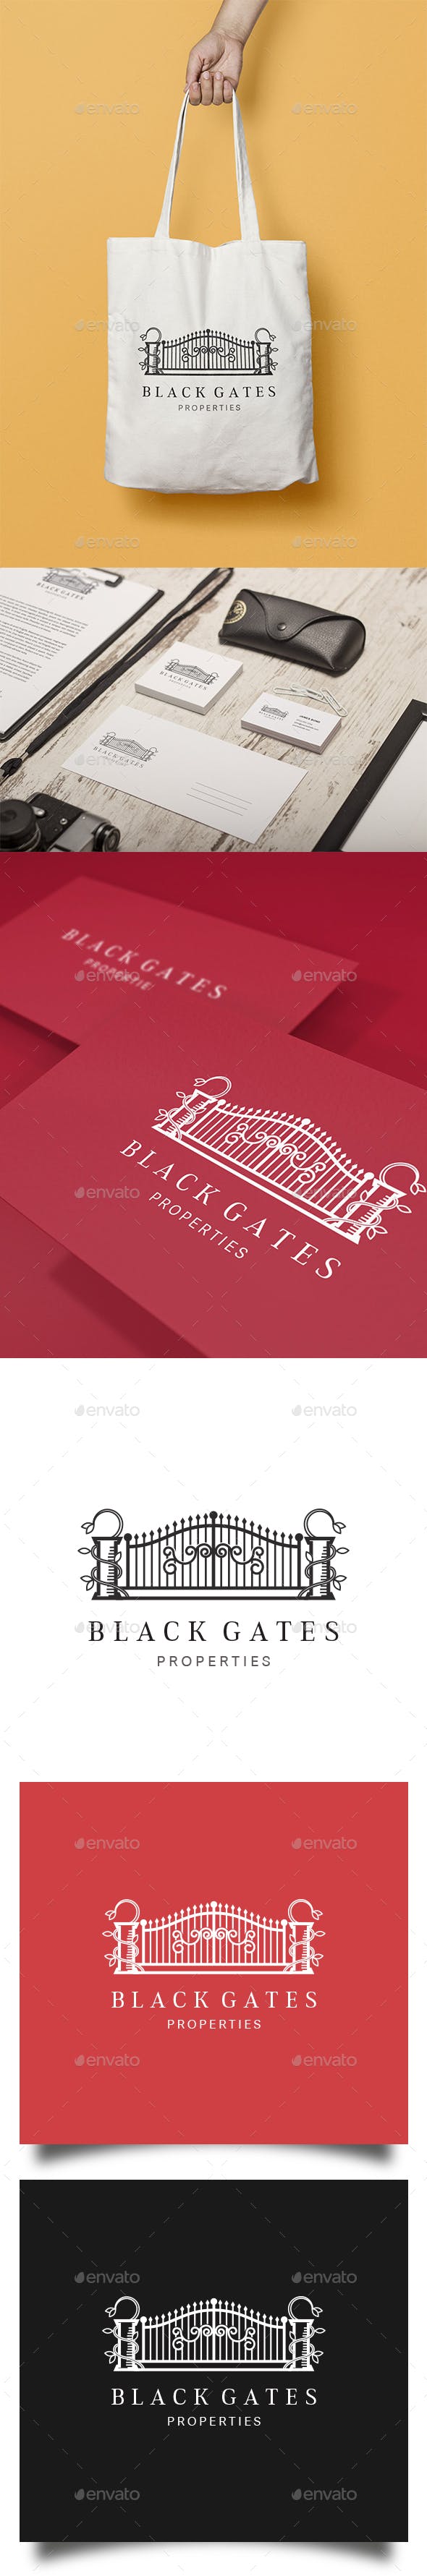 Black Gate Logo - Black Gates Logo by pixellord | GraphicRiver